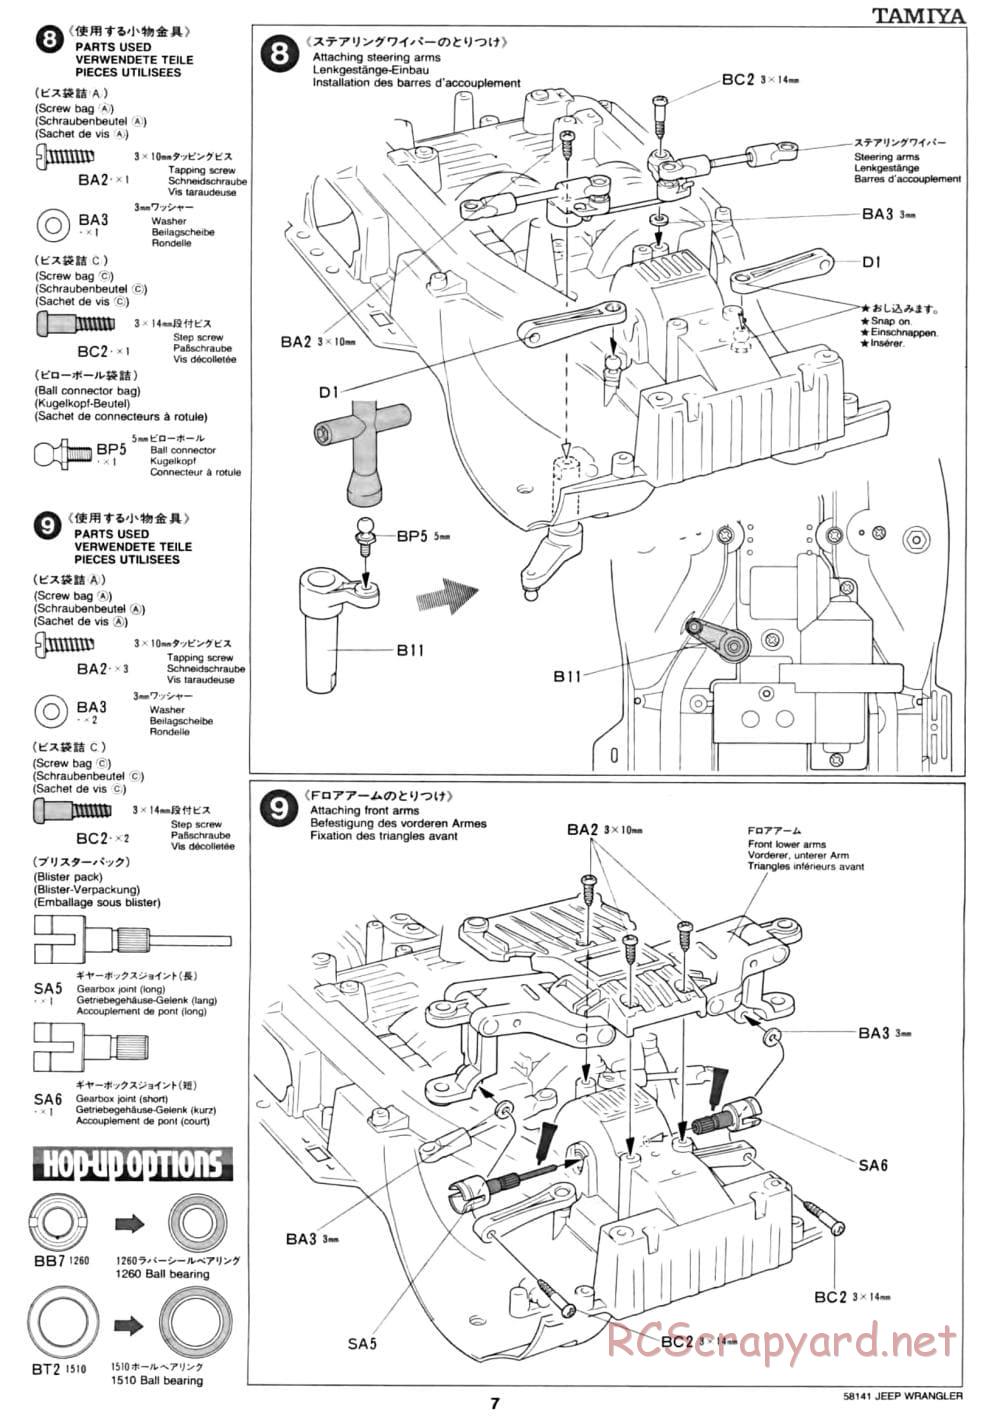 Tamiya - Jeep Wrangler - CC-01 Chassis - Manual - Page 7